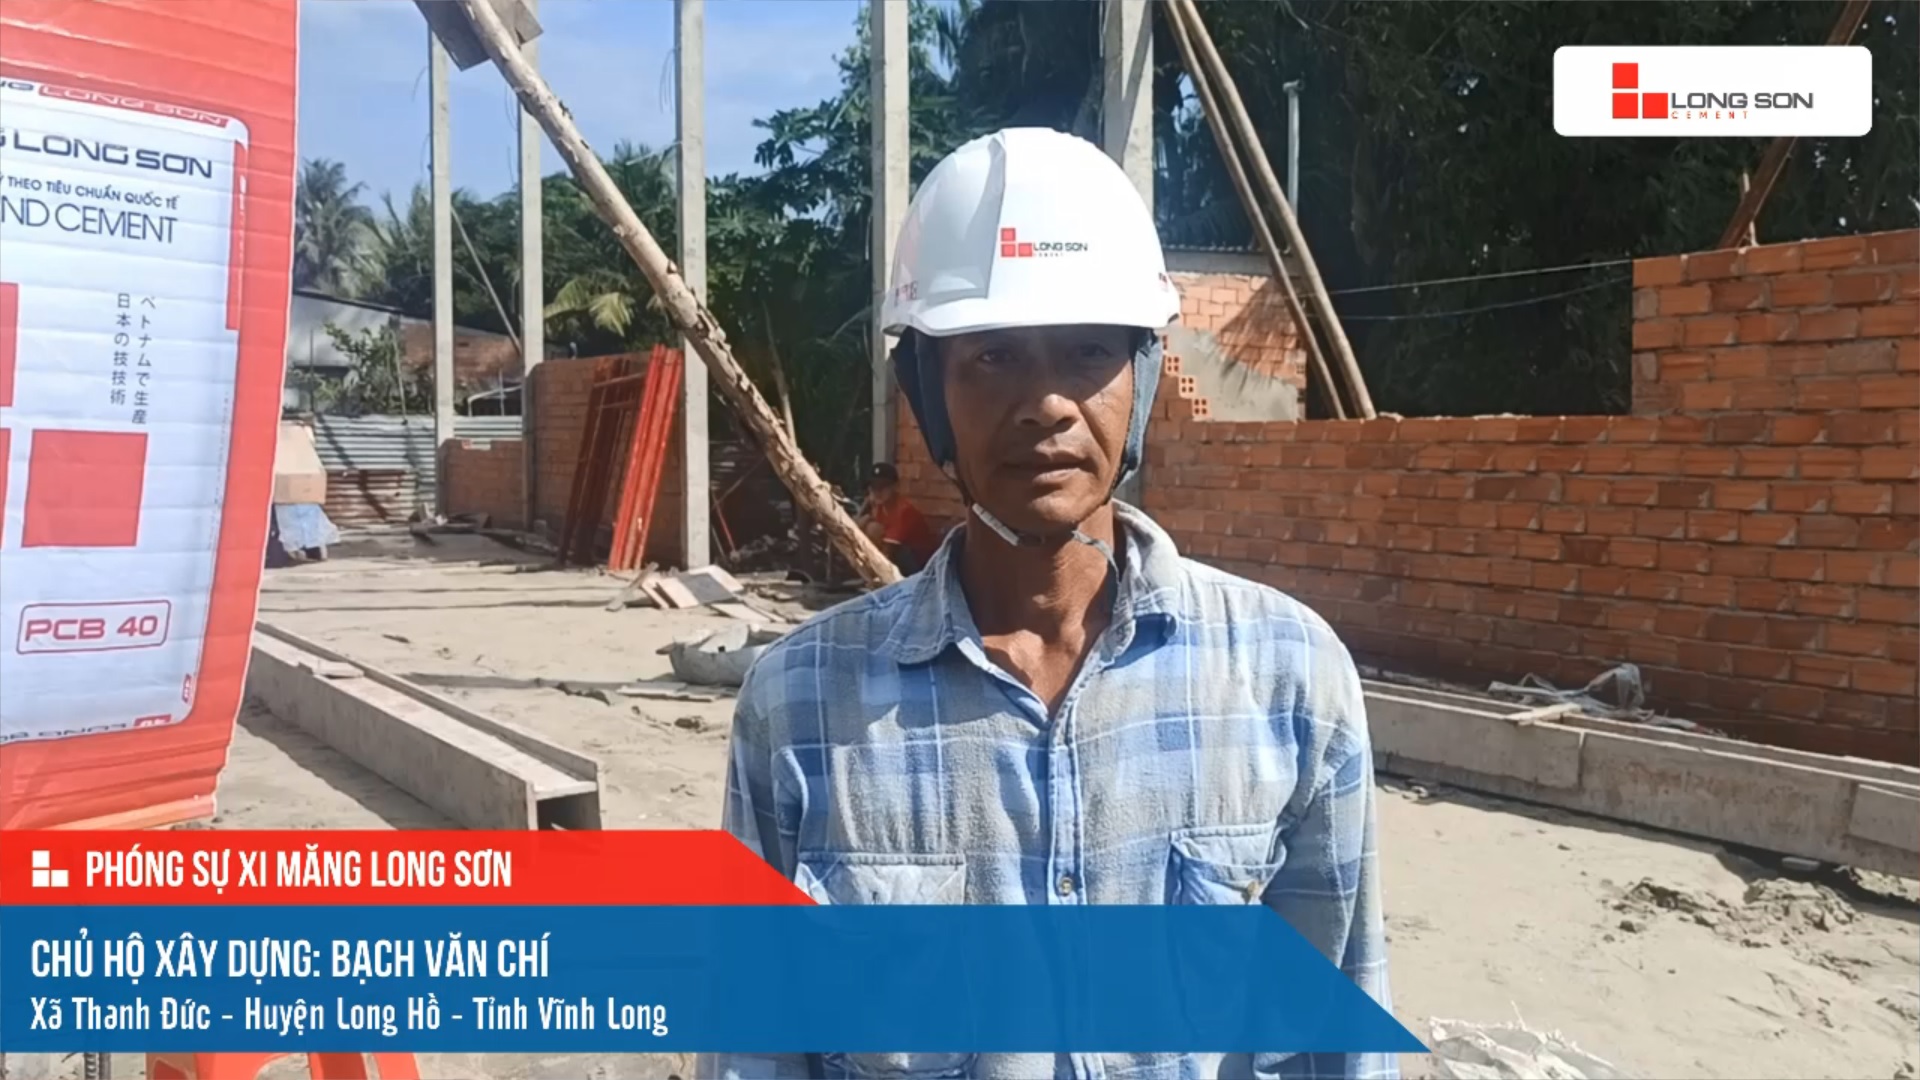 Phóng sự công trình sử dụng Xi măng Long Sơn tại Vĩnh Long ngày 06/12/2021